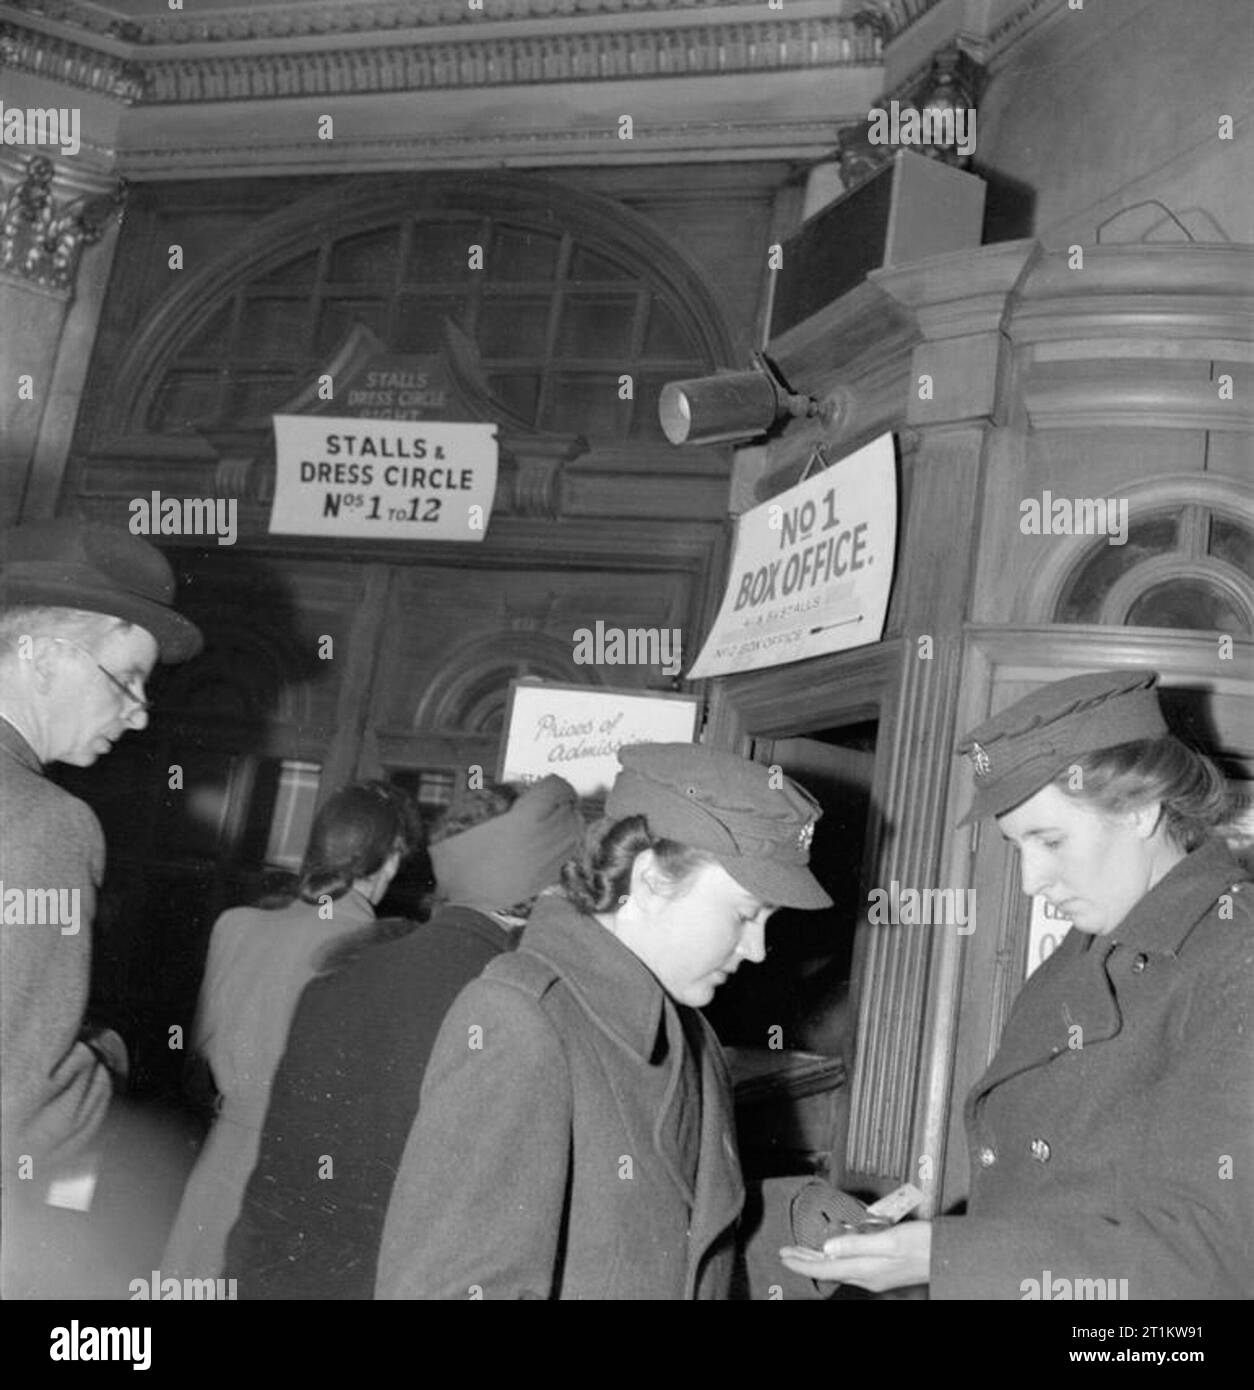 Kriegszeit Oper - Musik und Unterhaltung im Neuen Theater, St Martin's Lane, London, England, UK, 1943 Zwei Mitglieder des ATS ihre Änderung nach dem Kauf von Tickets an der Nr. 1 Box Office am Neuen Theater an der St. Martin's Lane in London. Hinter ihnen, Männer und Frauen queue Tickets zu kaufen. Ein Schild über der Tür weist auf die Stände und Dress Circle, Nummern 1 bis 12. Nach dem ursprünglichen Titel' die Opern sind so populär, dass es sehr schwierig ist, Sitze auf der Nacht der Leistung'. Stockfoto